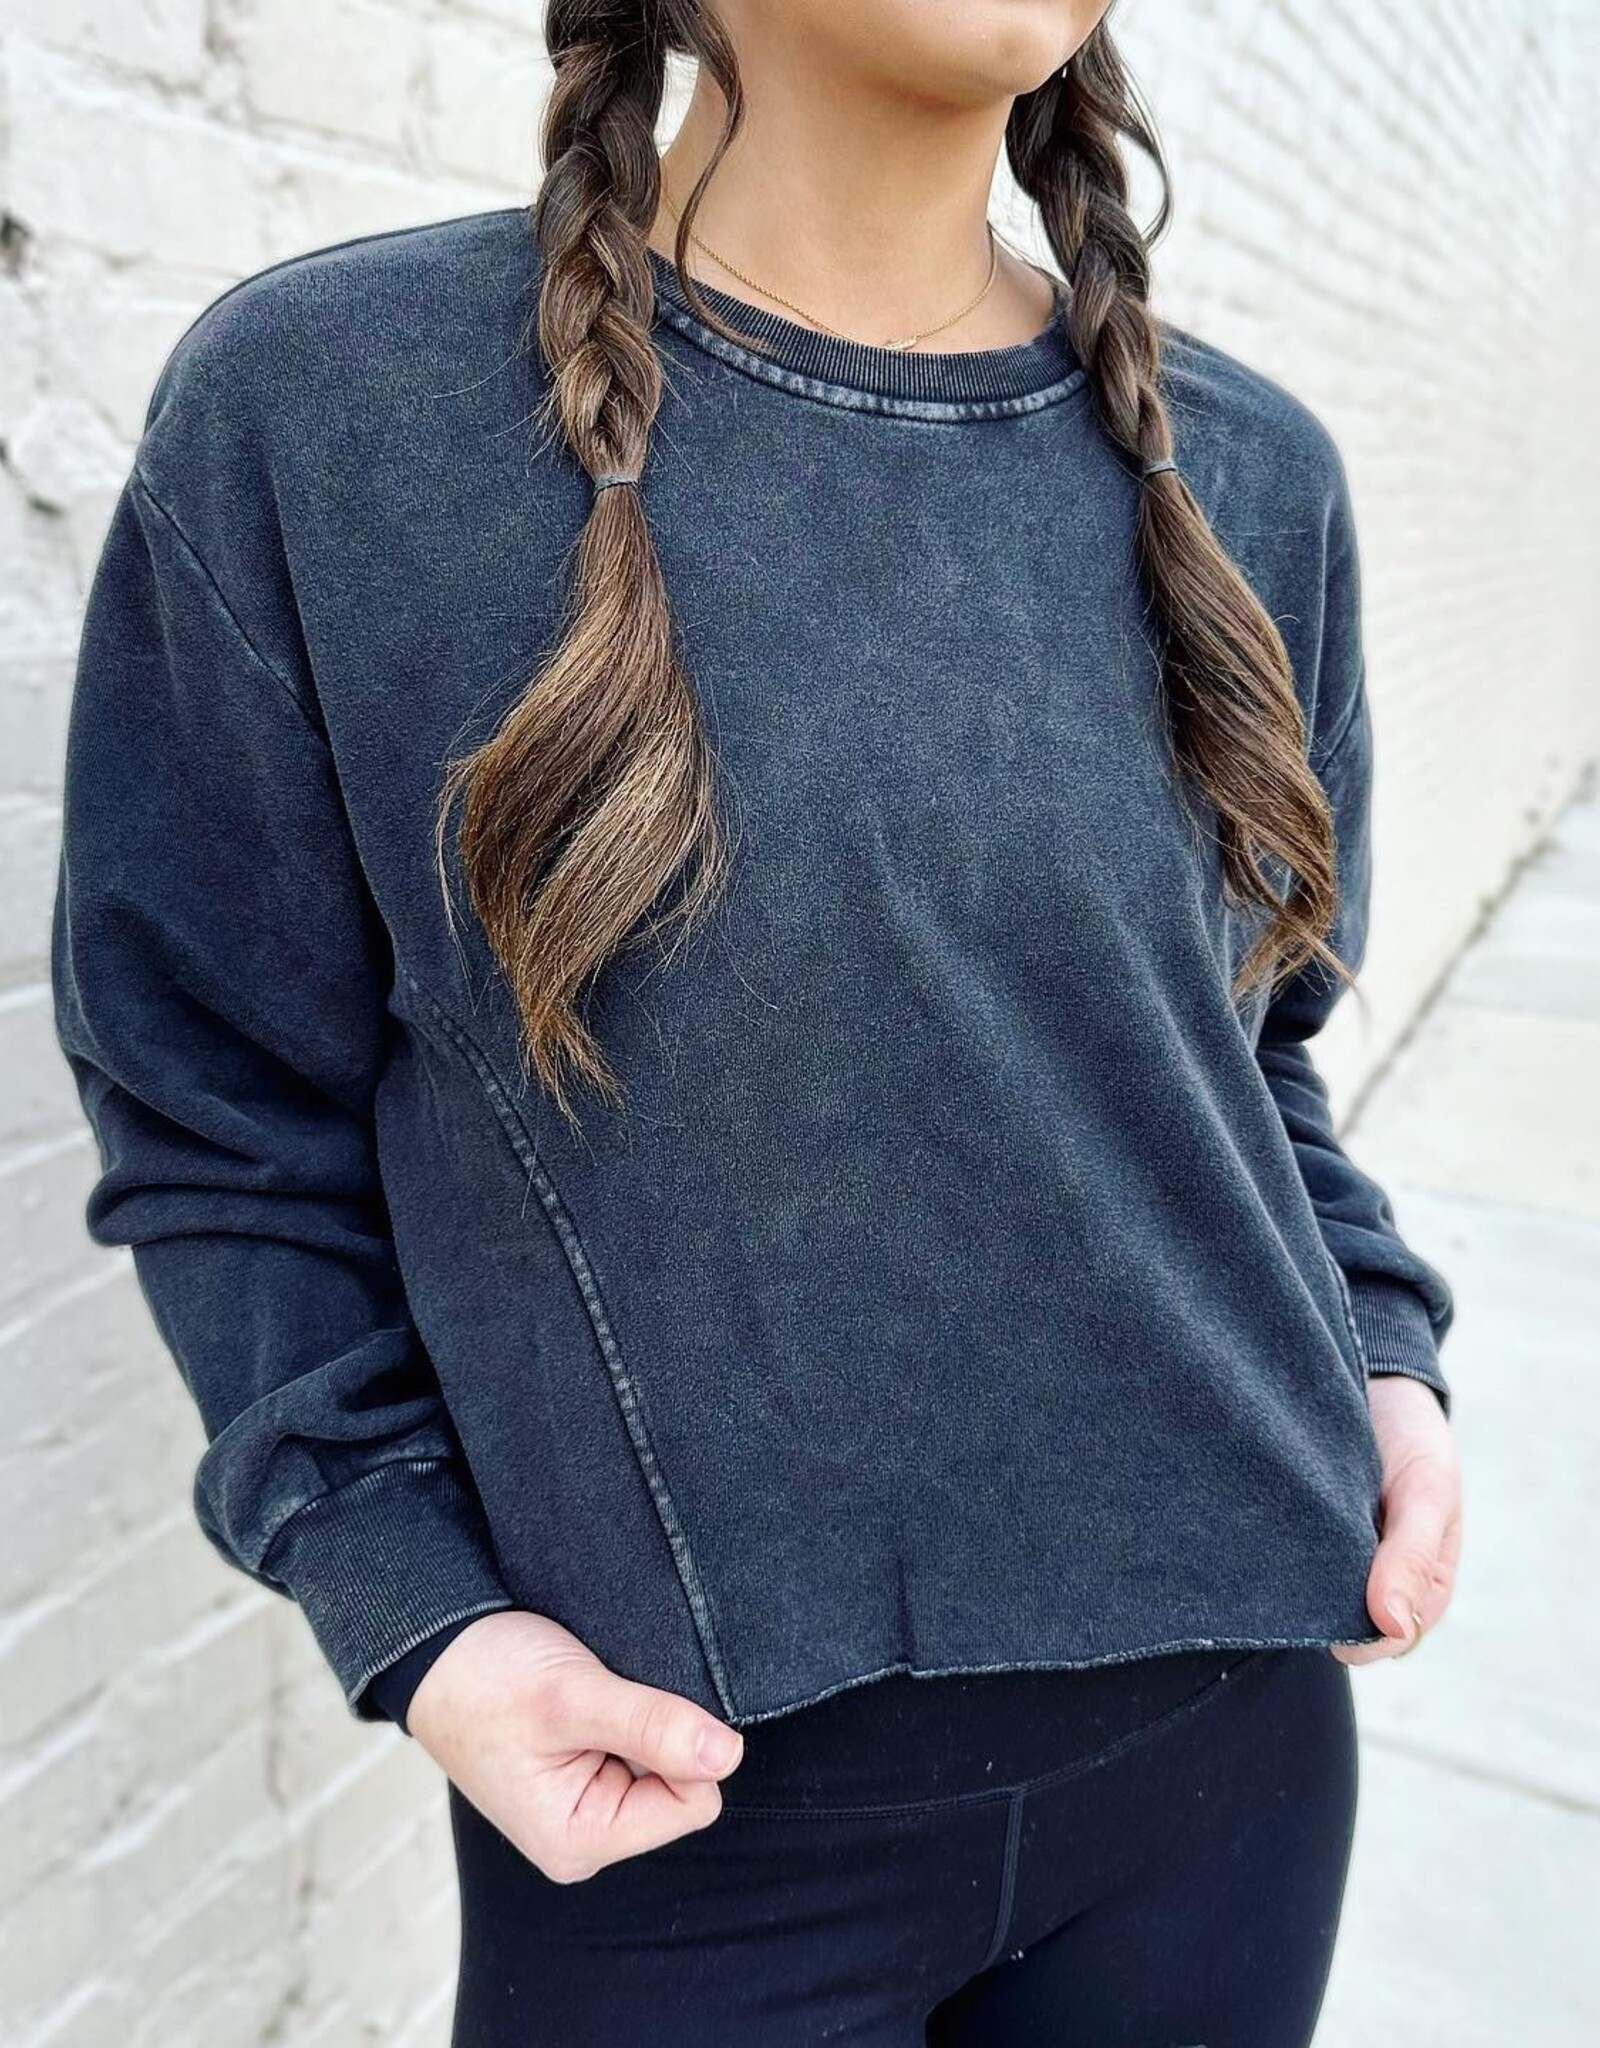 HYFVE Maria Sweatshirt Top in Black